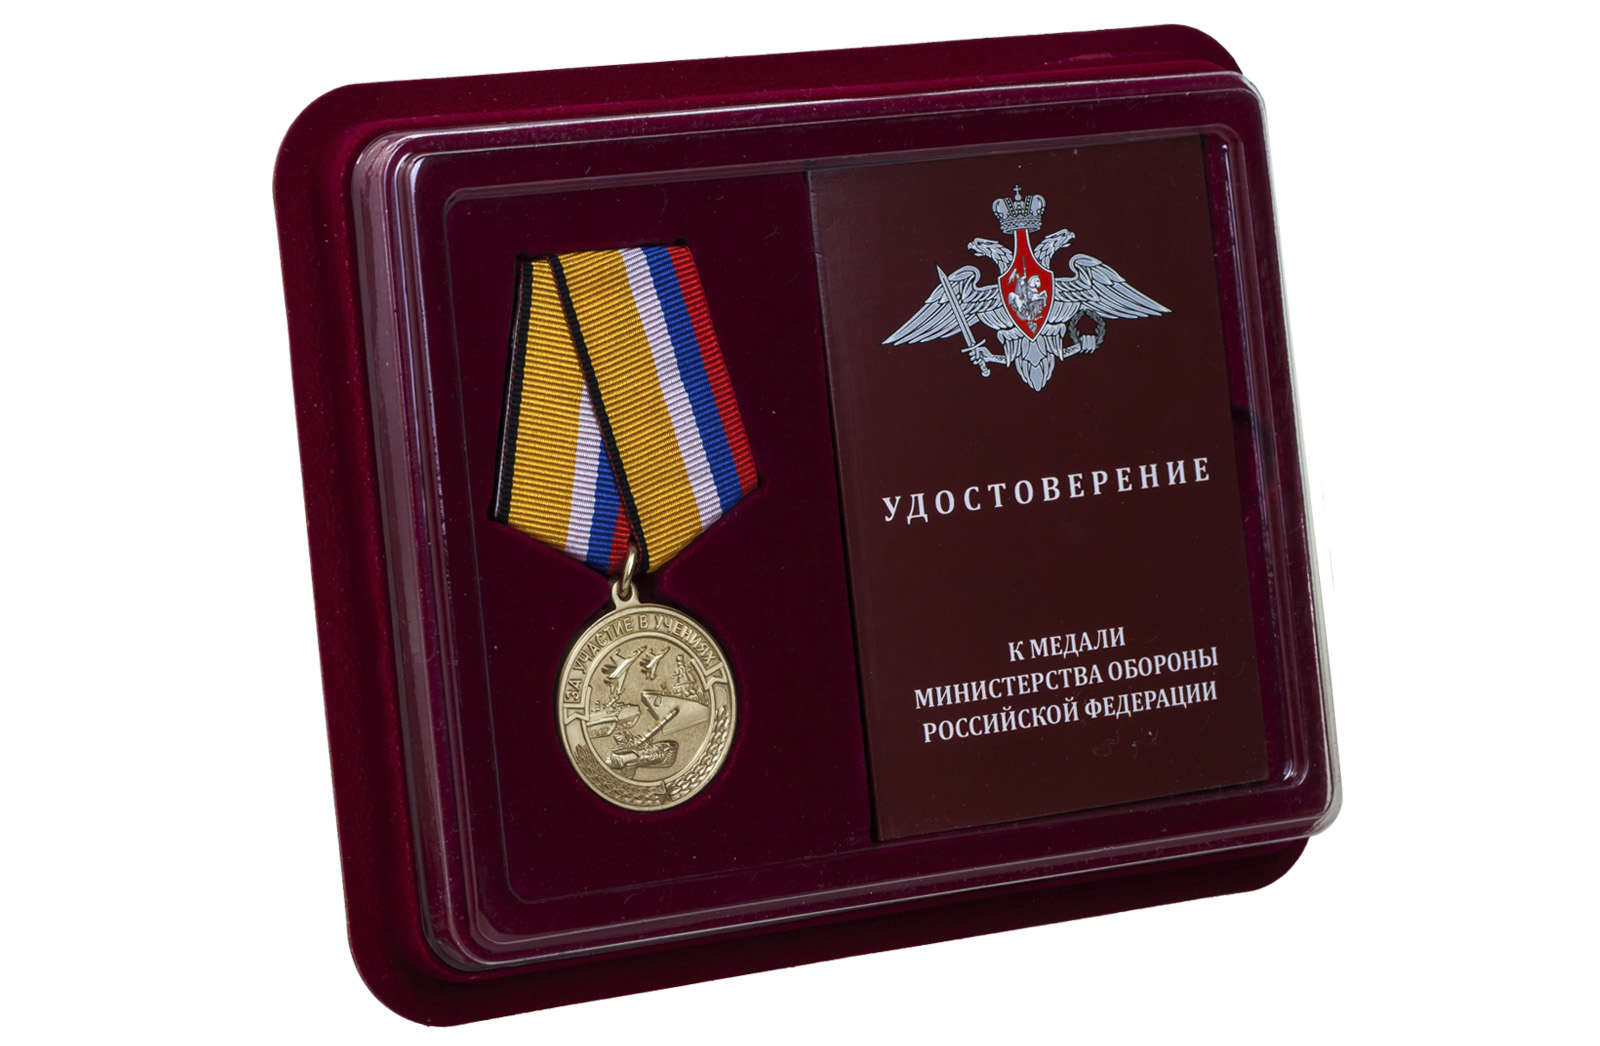 Купить памятную медаль За участие в учениях МО РФ оптом или в розницу